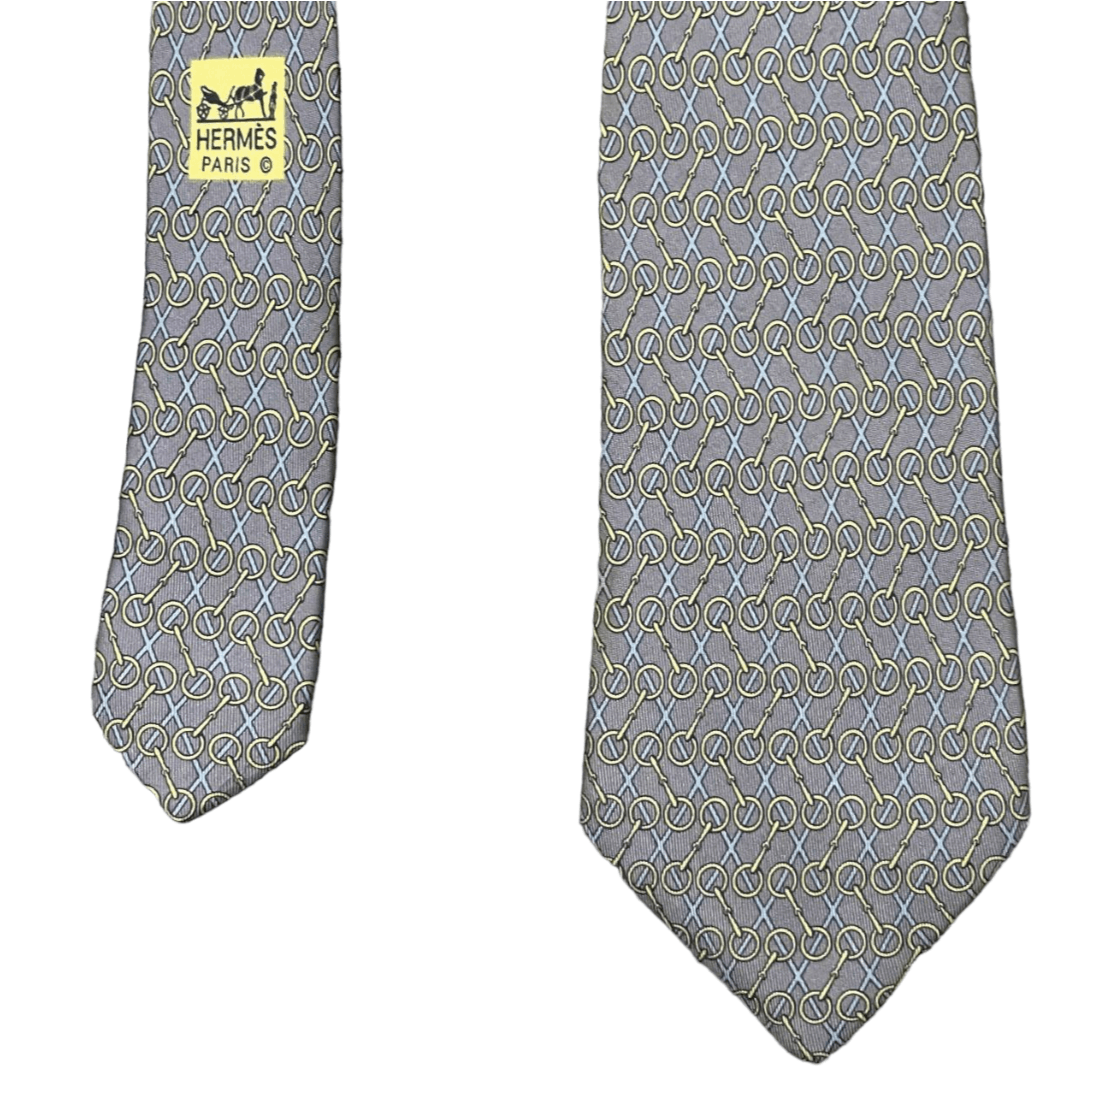 Vintage Hermes Paris Silk Tie - 1